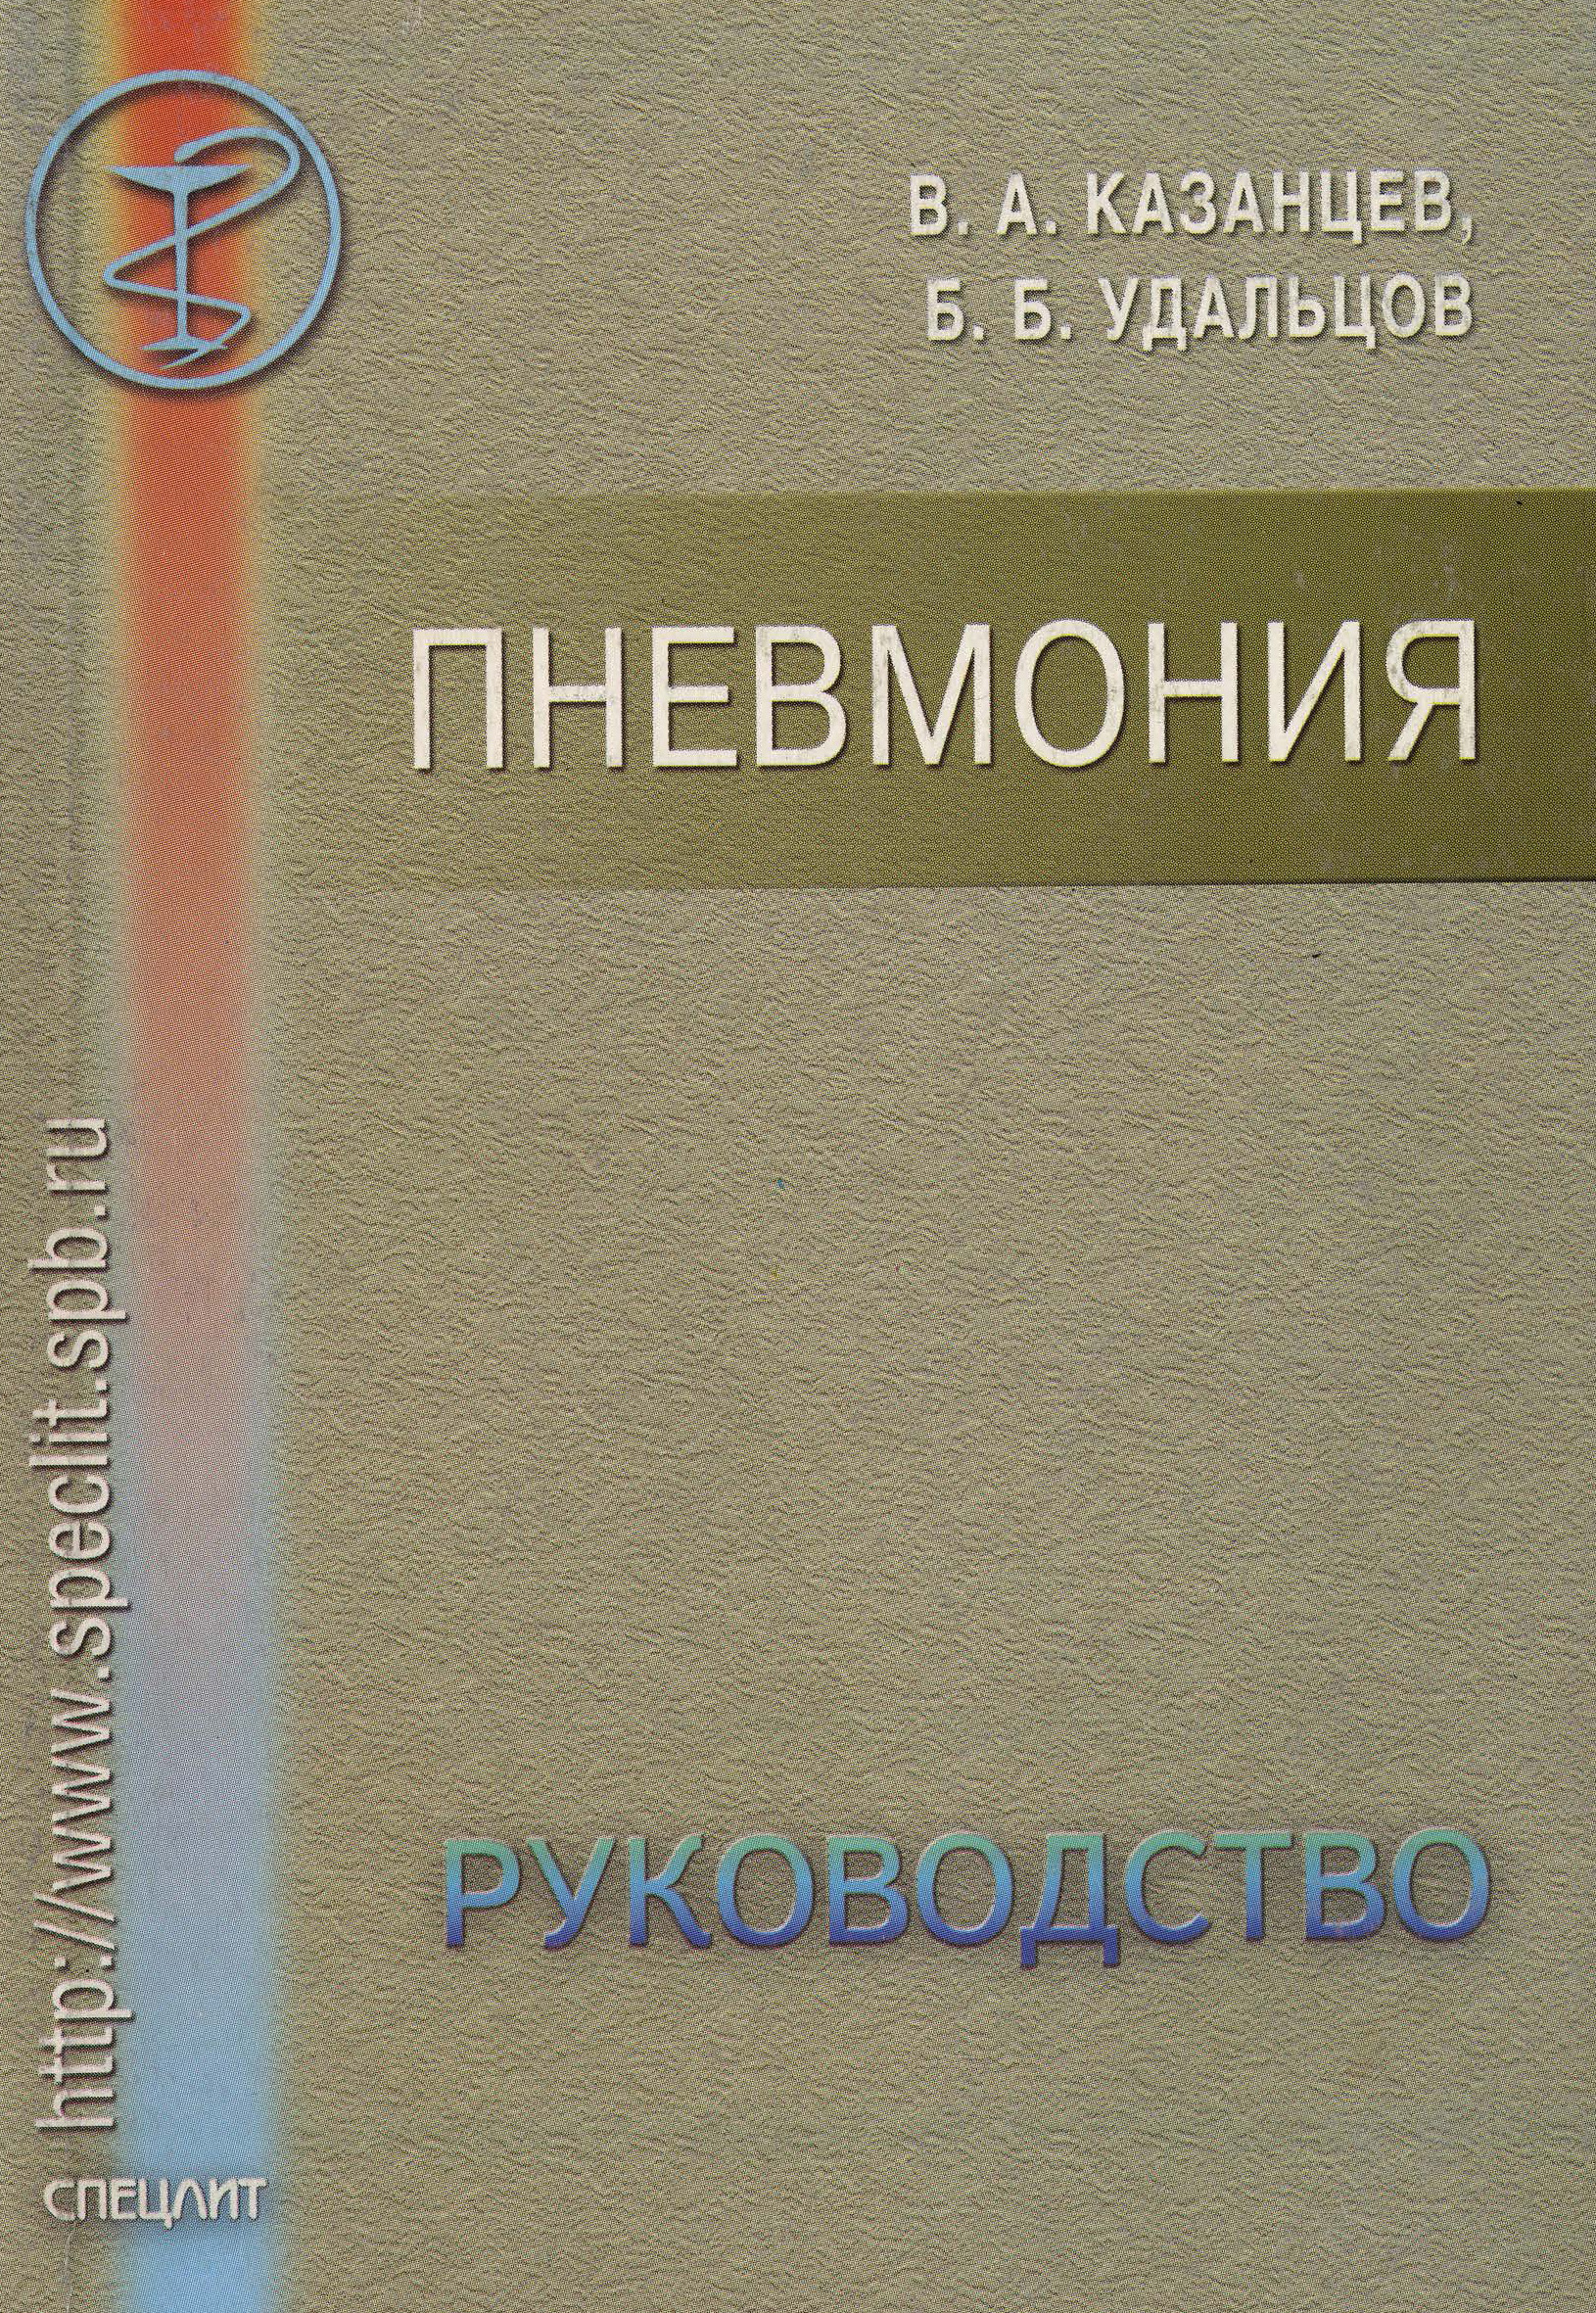 Книга Пневмония. Руководство из серии , созданная Борис Удальцов, Виктор Казанцев, может относится к жанру Медицина. Стоимость книги Пневмония. Руководство  с идентификатором 10244760 составляет 10.00 руб.